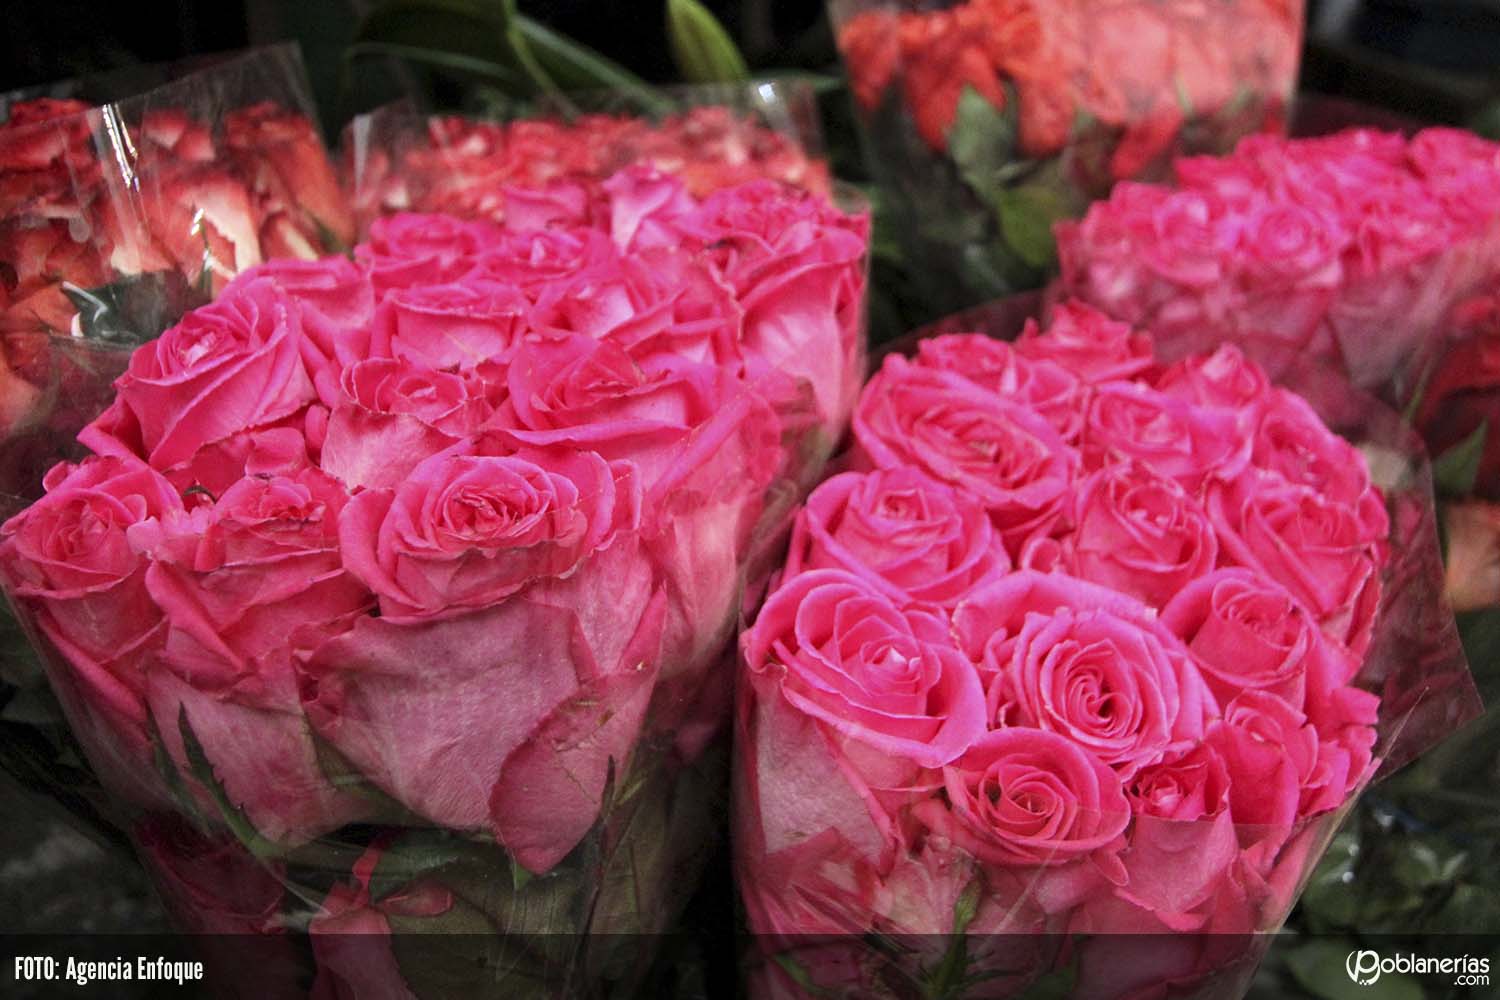 San Valentín, la gran oportunidad para los cultivadores de flores de Colombia